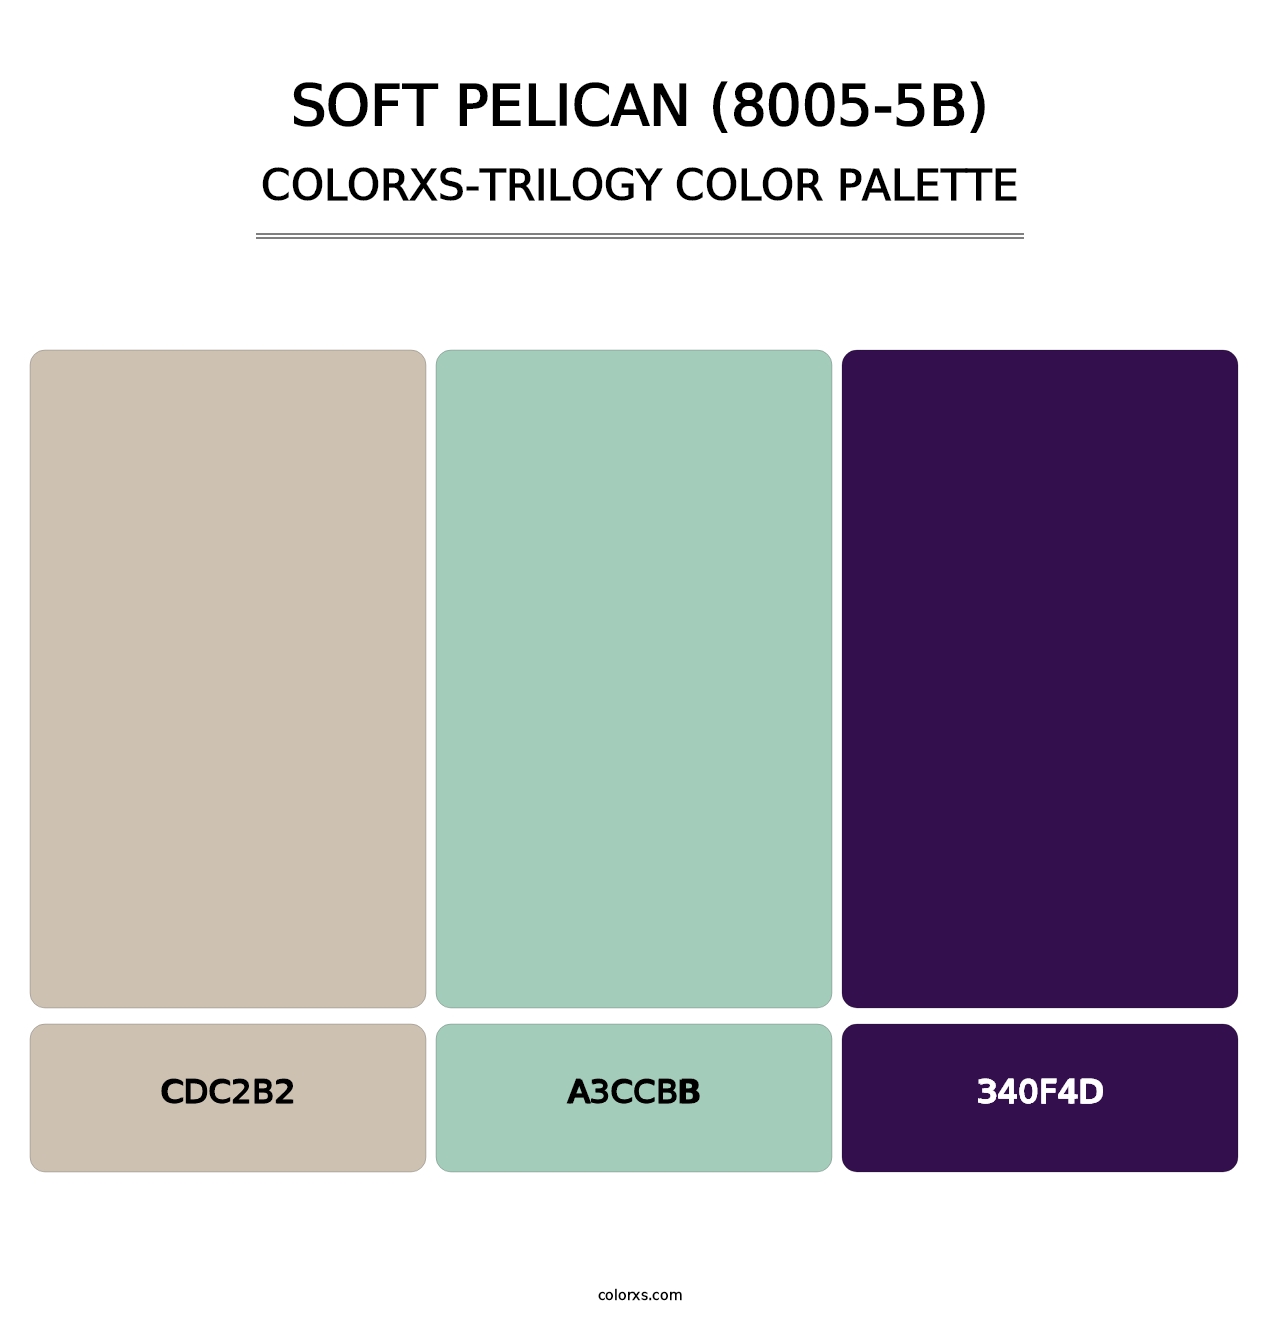 Soft Pelican (8005-5B) - Colorxs Trilogy Palette